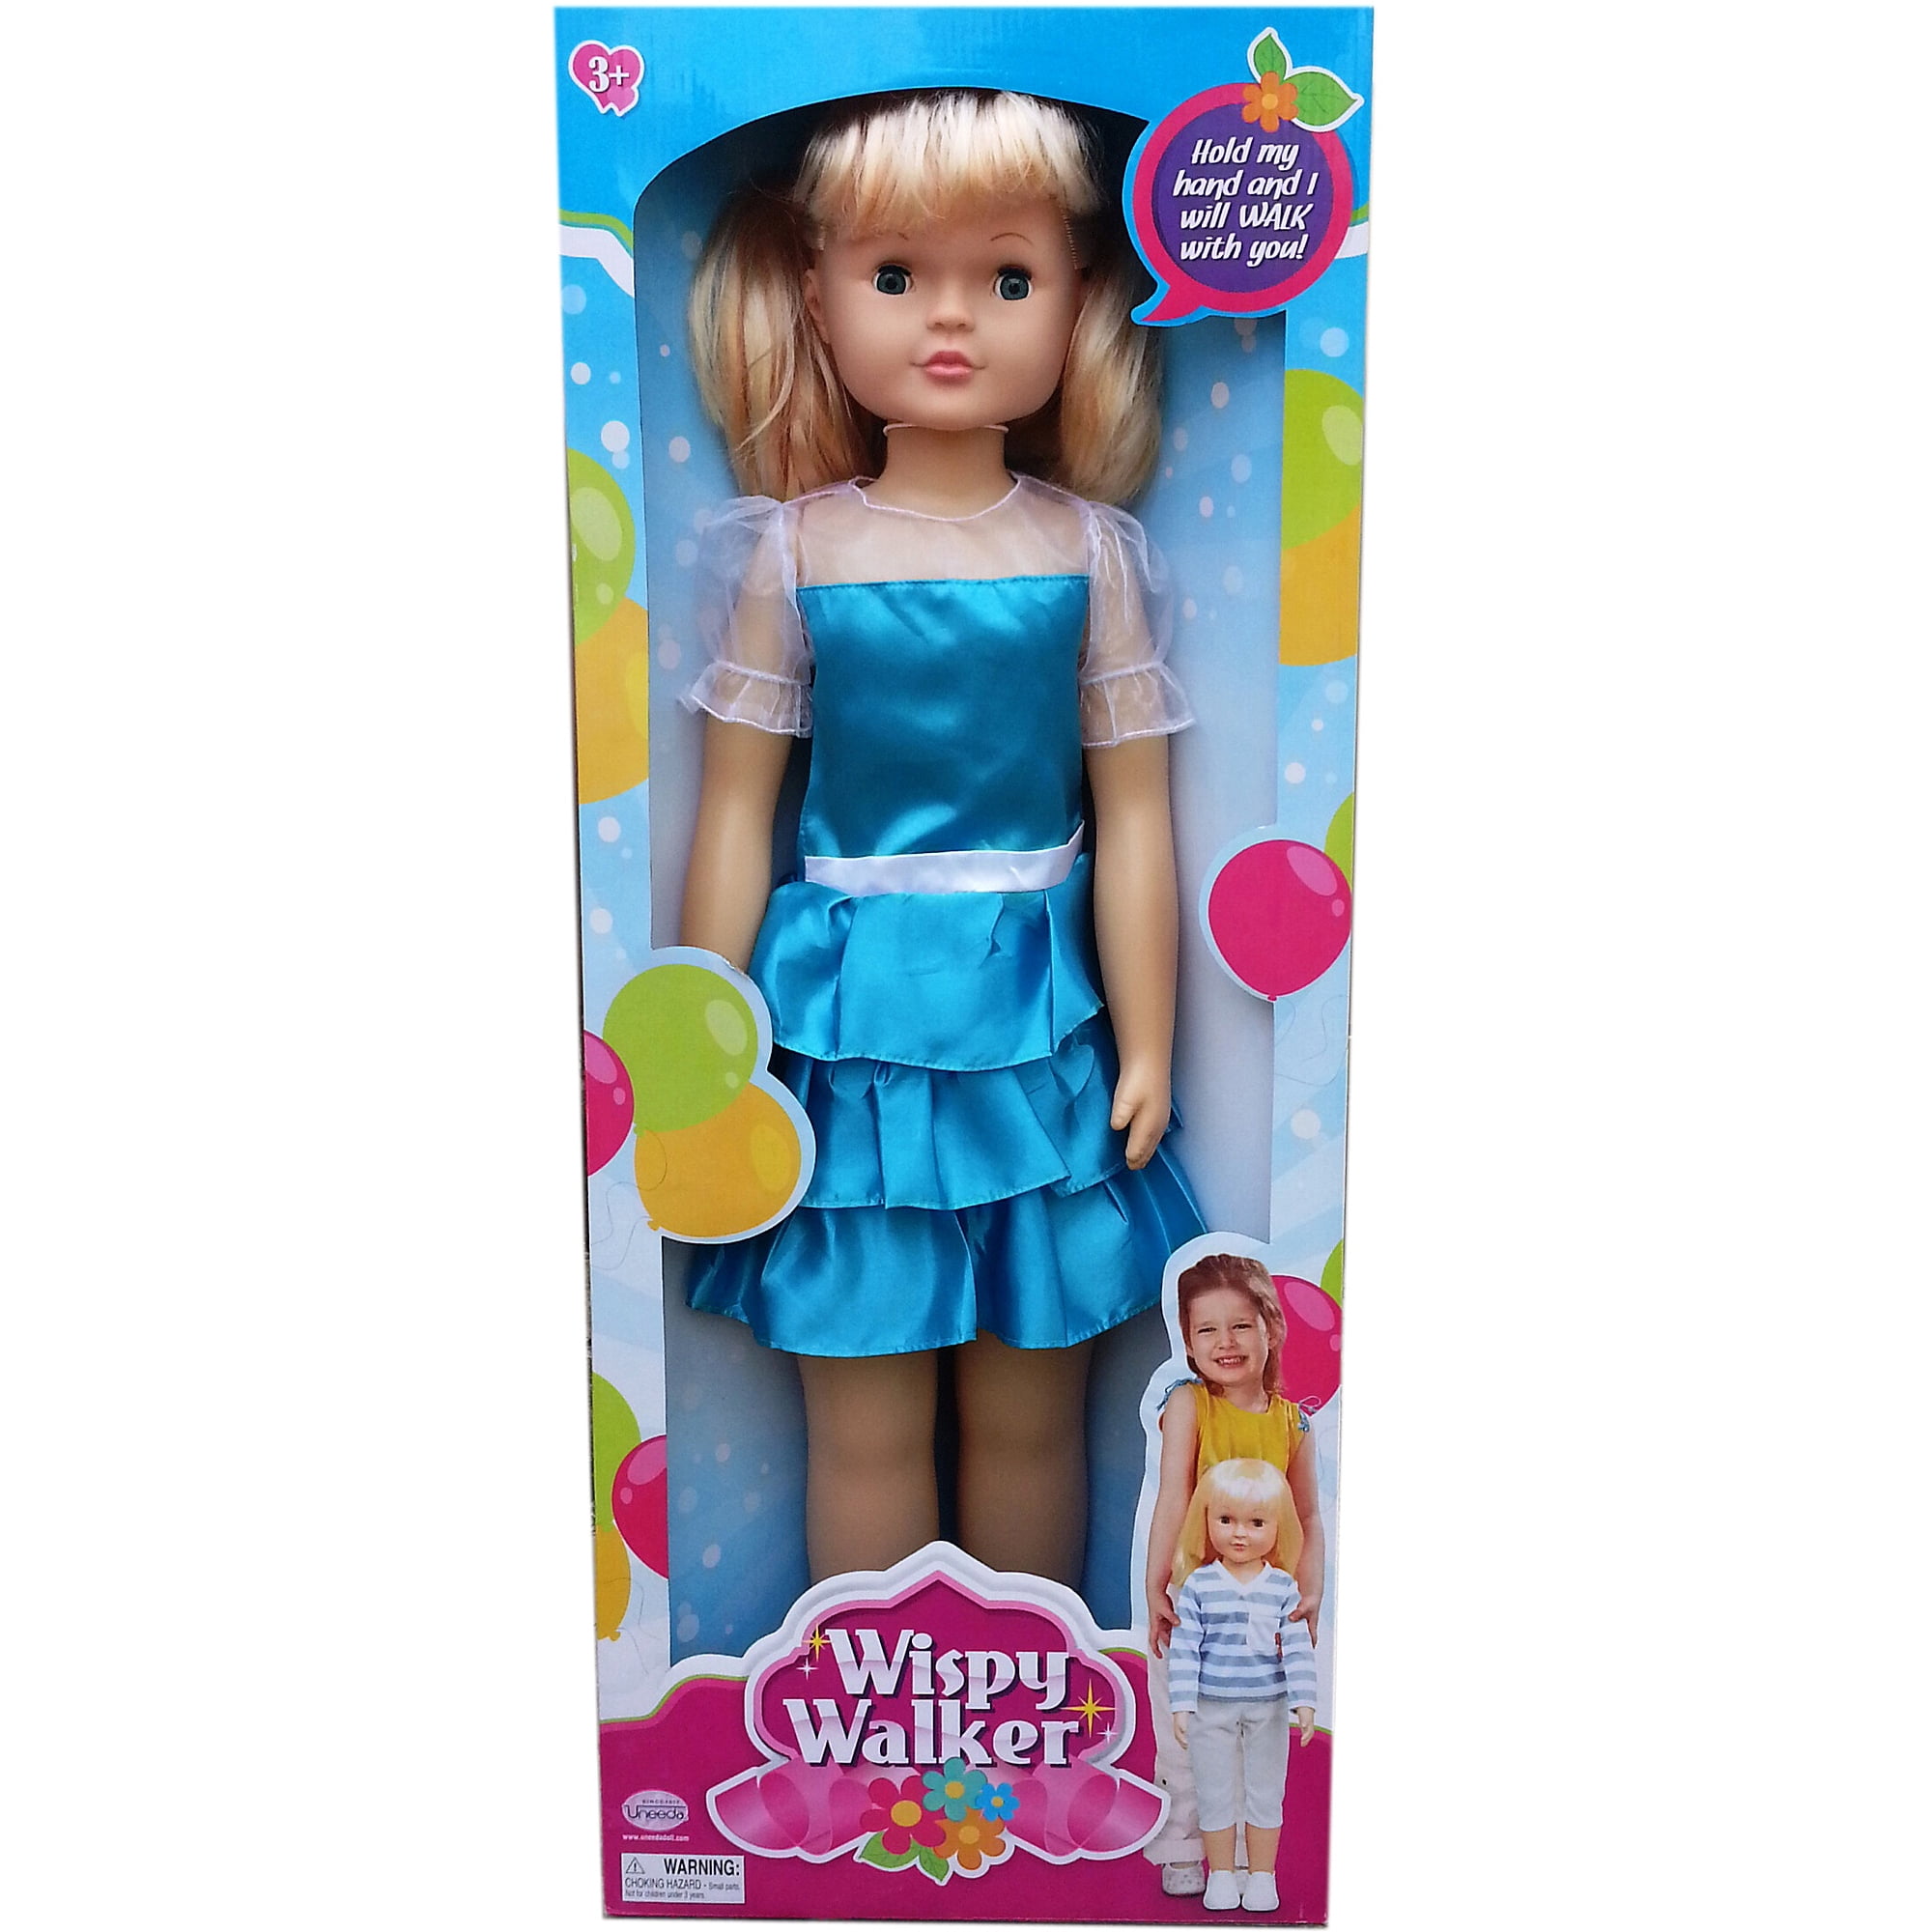 uneeda wispy walker doll